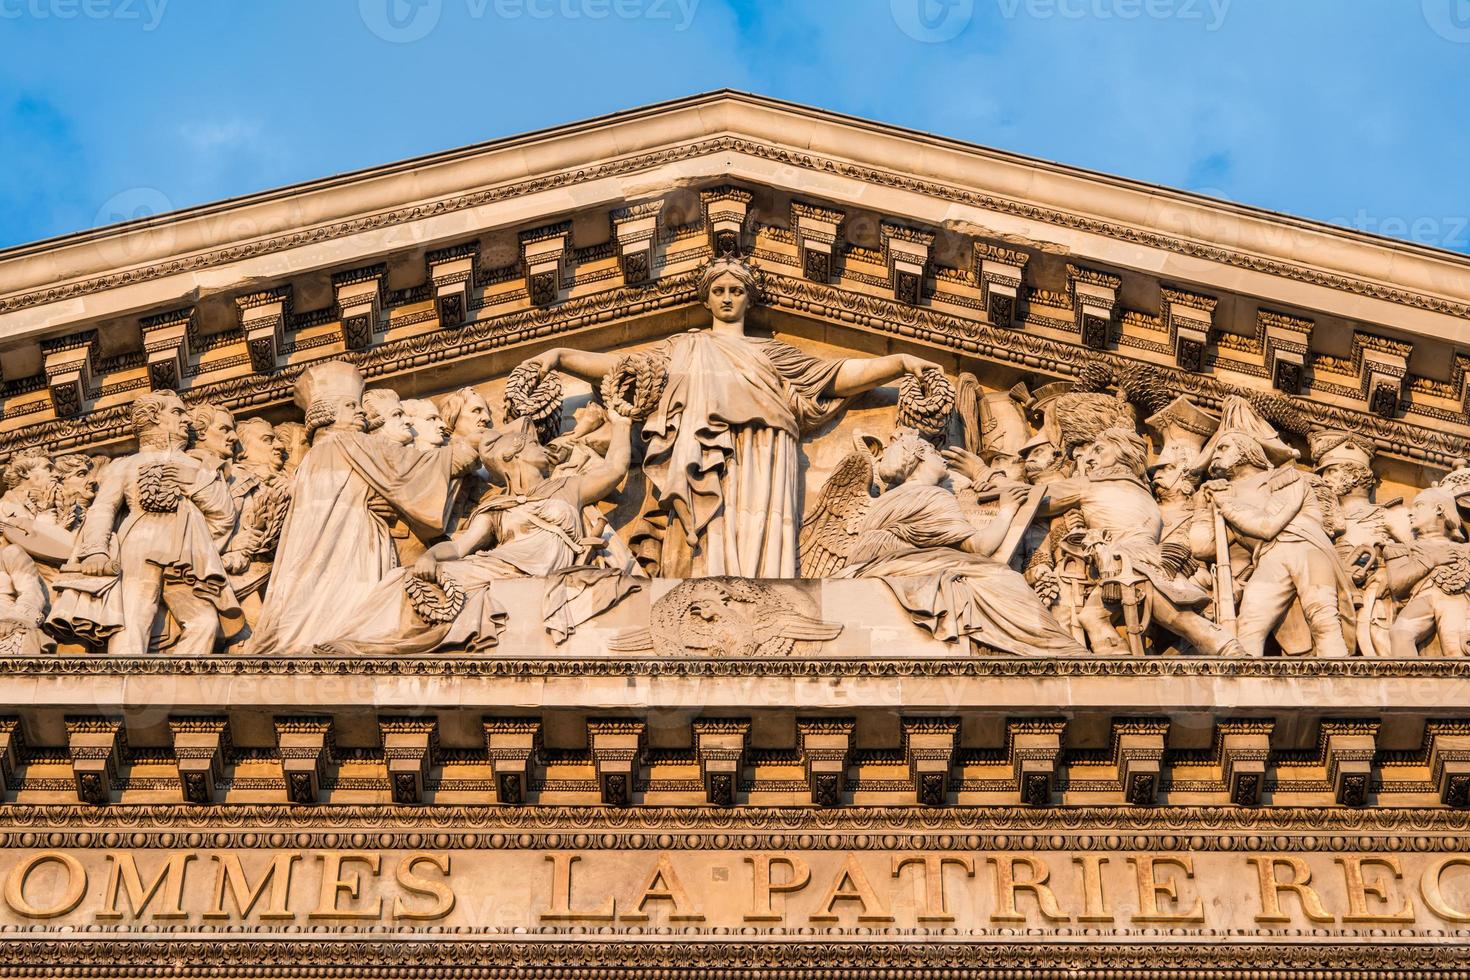 El panteón, París Francia-detalle arquitectónico foto